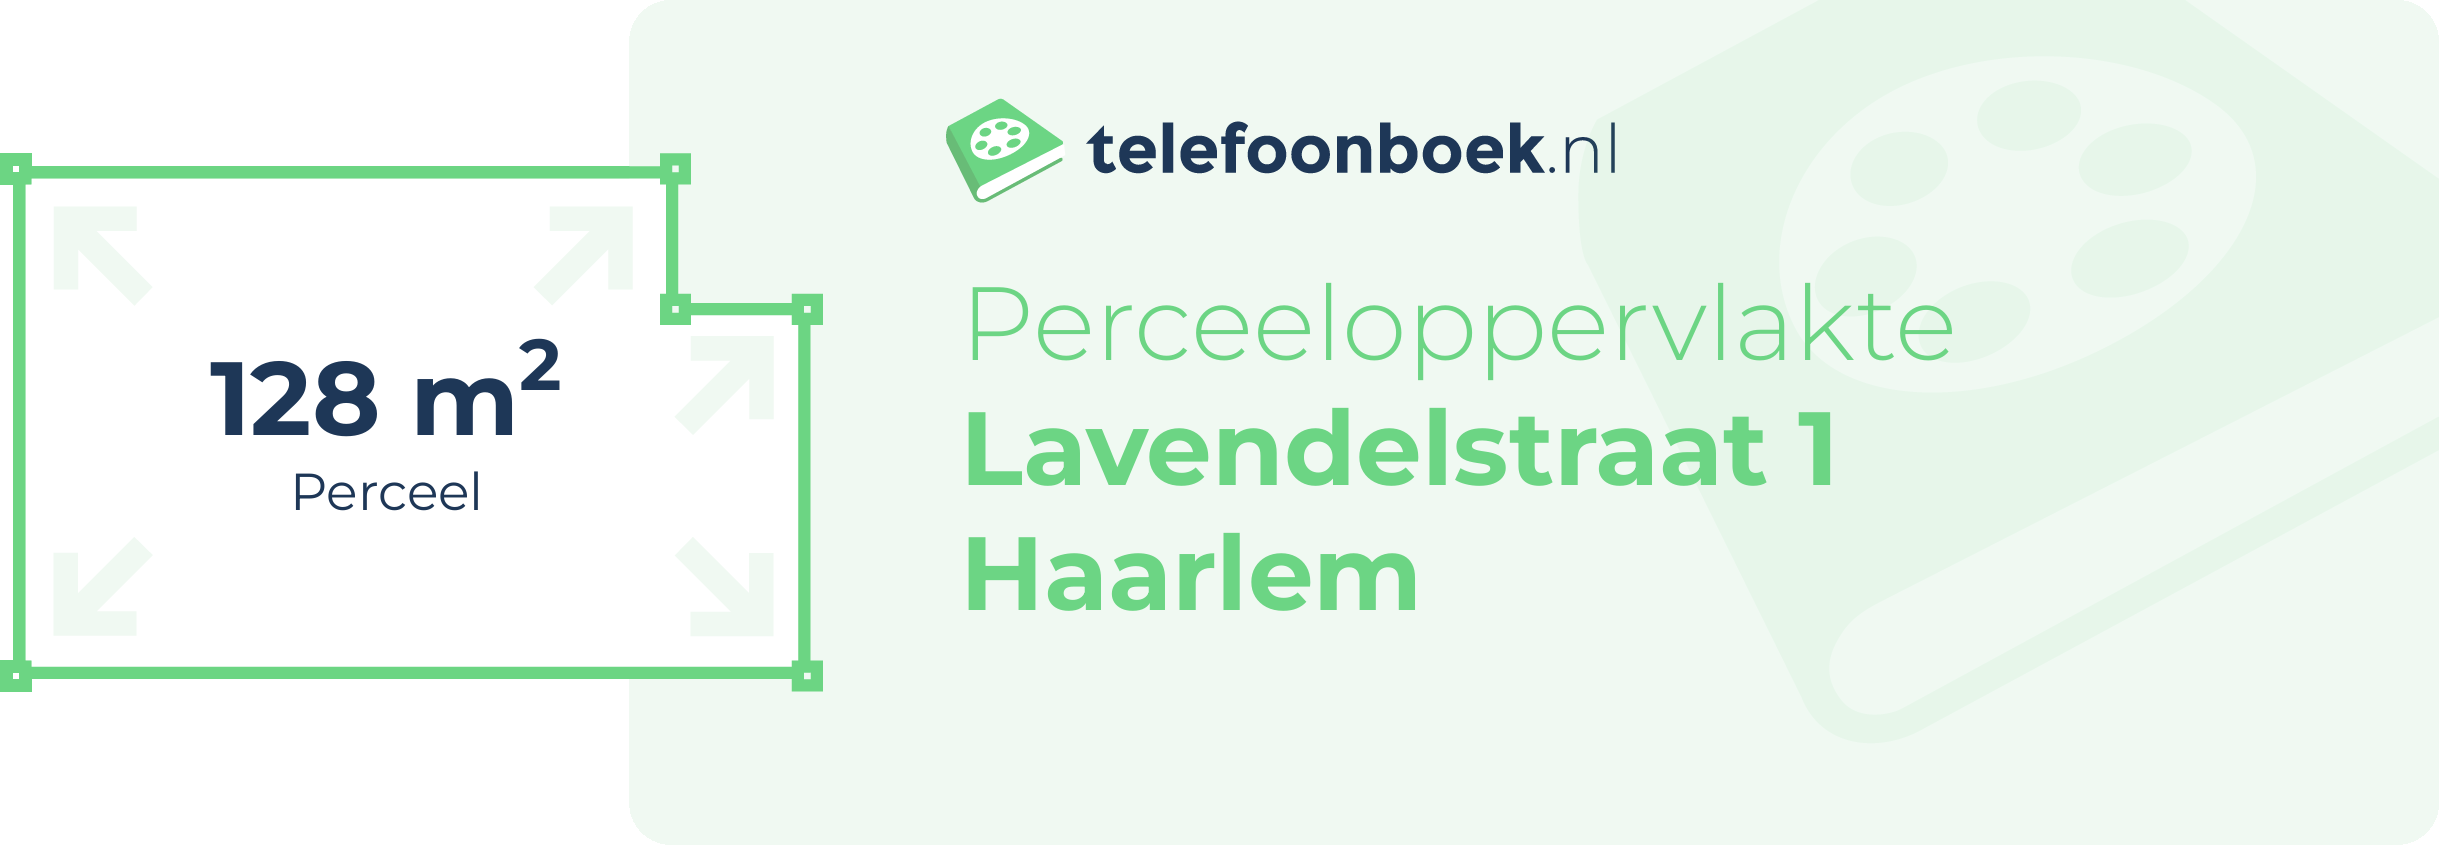 Perceeloppervlakte Lavendelstraat 1 Haarlem